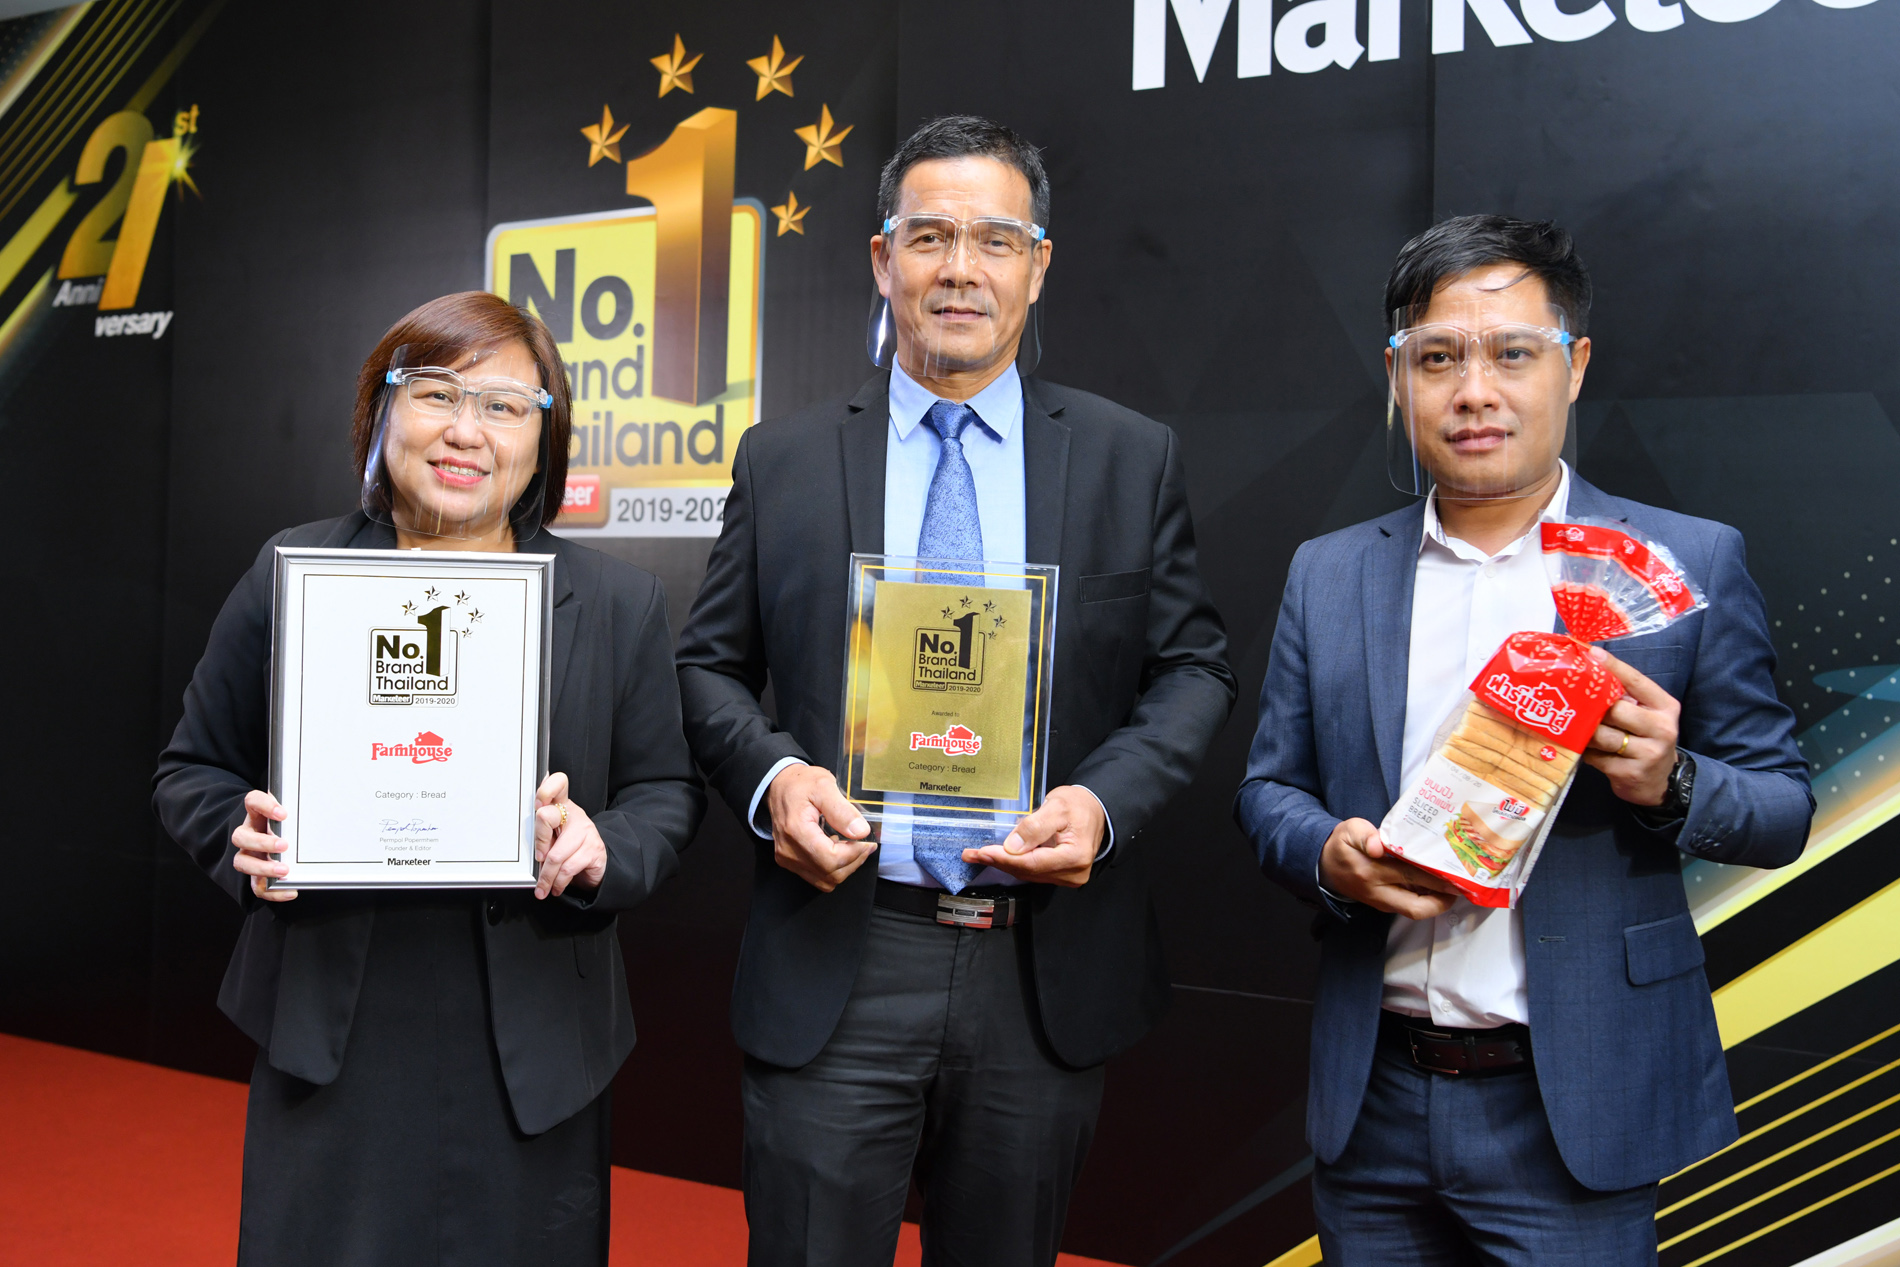 ฟาร์มเฮ้าส์ รับรางวัล Marketeer No.1 Brand Thailand 2019-2020 ตอกย้ำคุณภาพสินค้าครองใจผู้บริโภคอันดับ 1 ต่อเนื่อง 3 ปีซ้อน